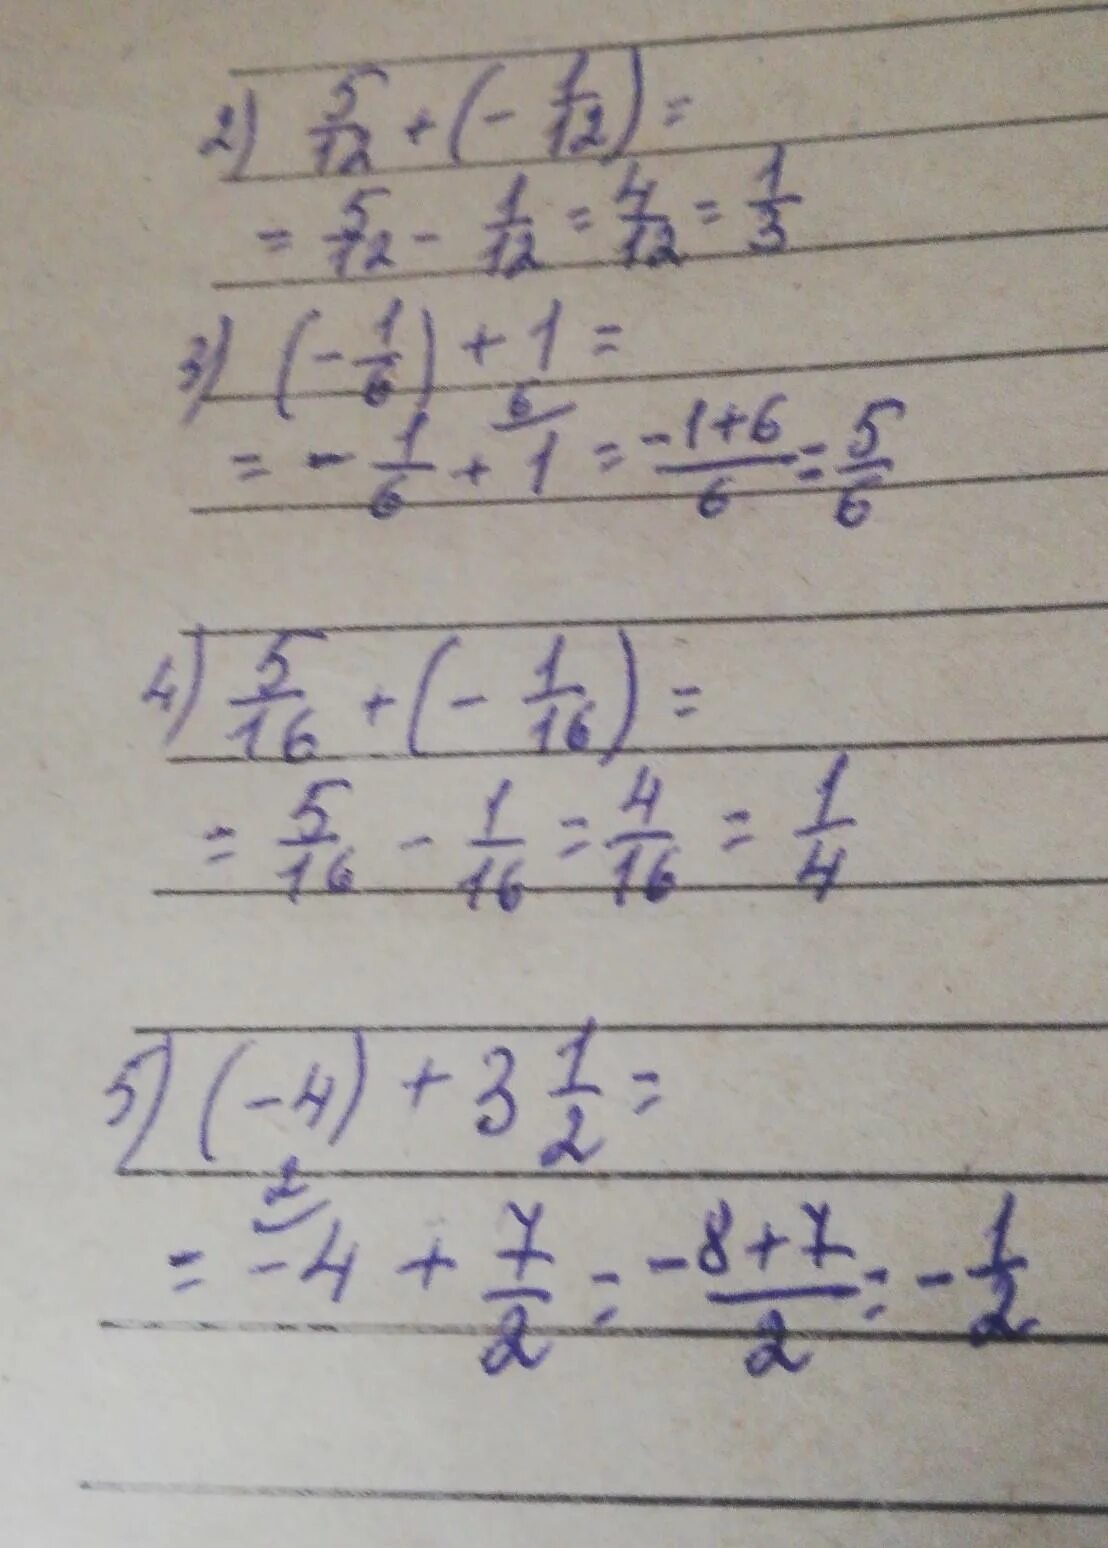 1 12 25 решение. -12+(-5). 5/12+(7/18-3/4). 5/12+(1/12+1/4).